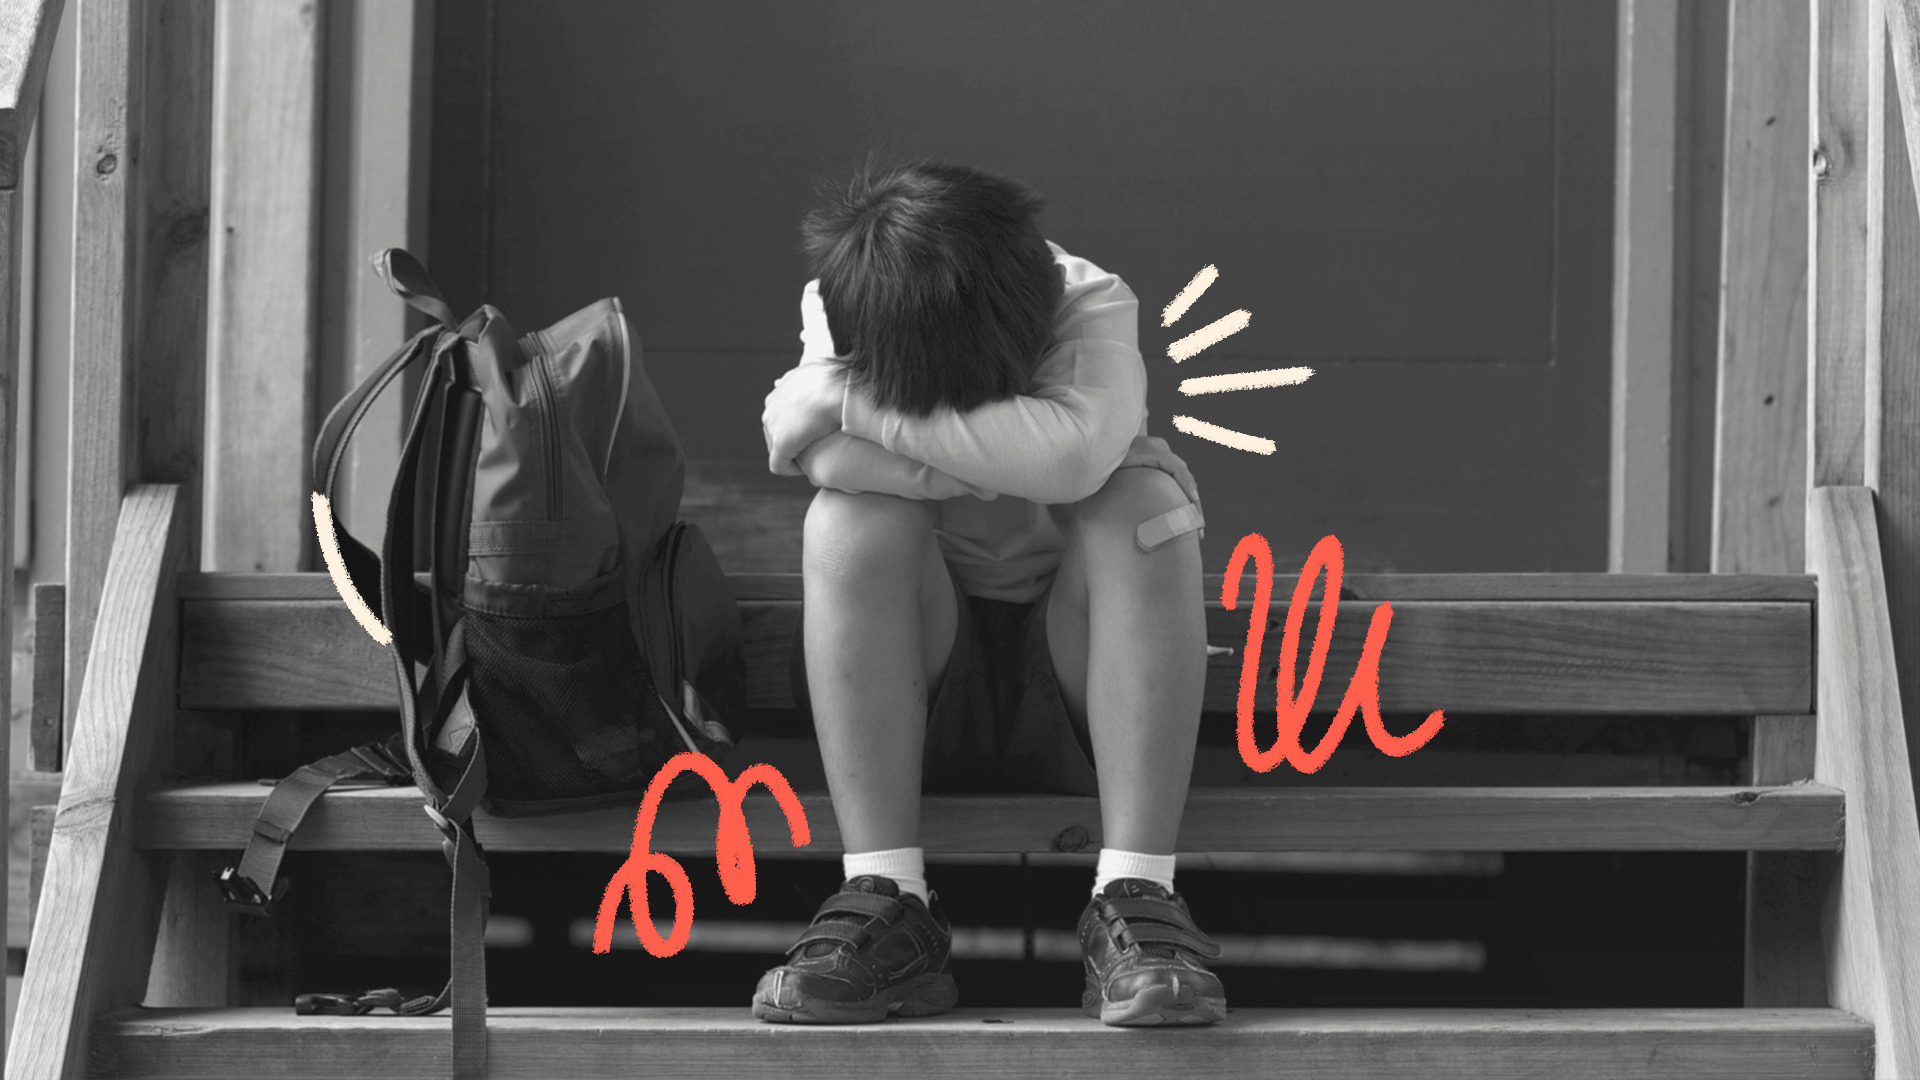 Imagem ilustra matéria sobre a criminalização do bullying e cyberbullying e mostra um menino pequeno sentado em uma escada, escondendo o rsto atrás dos braços. Ao lado, uma mochila.